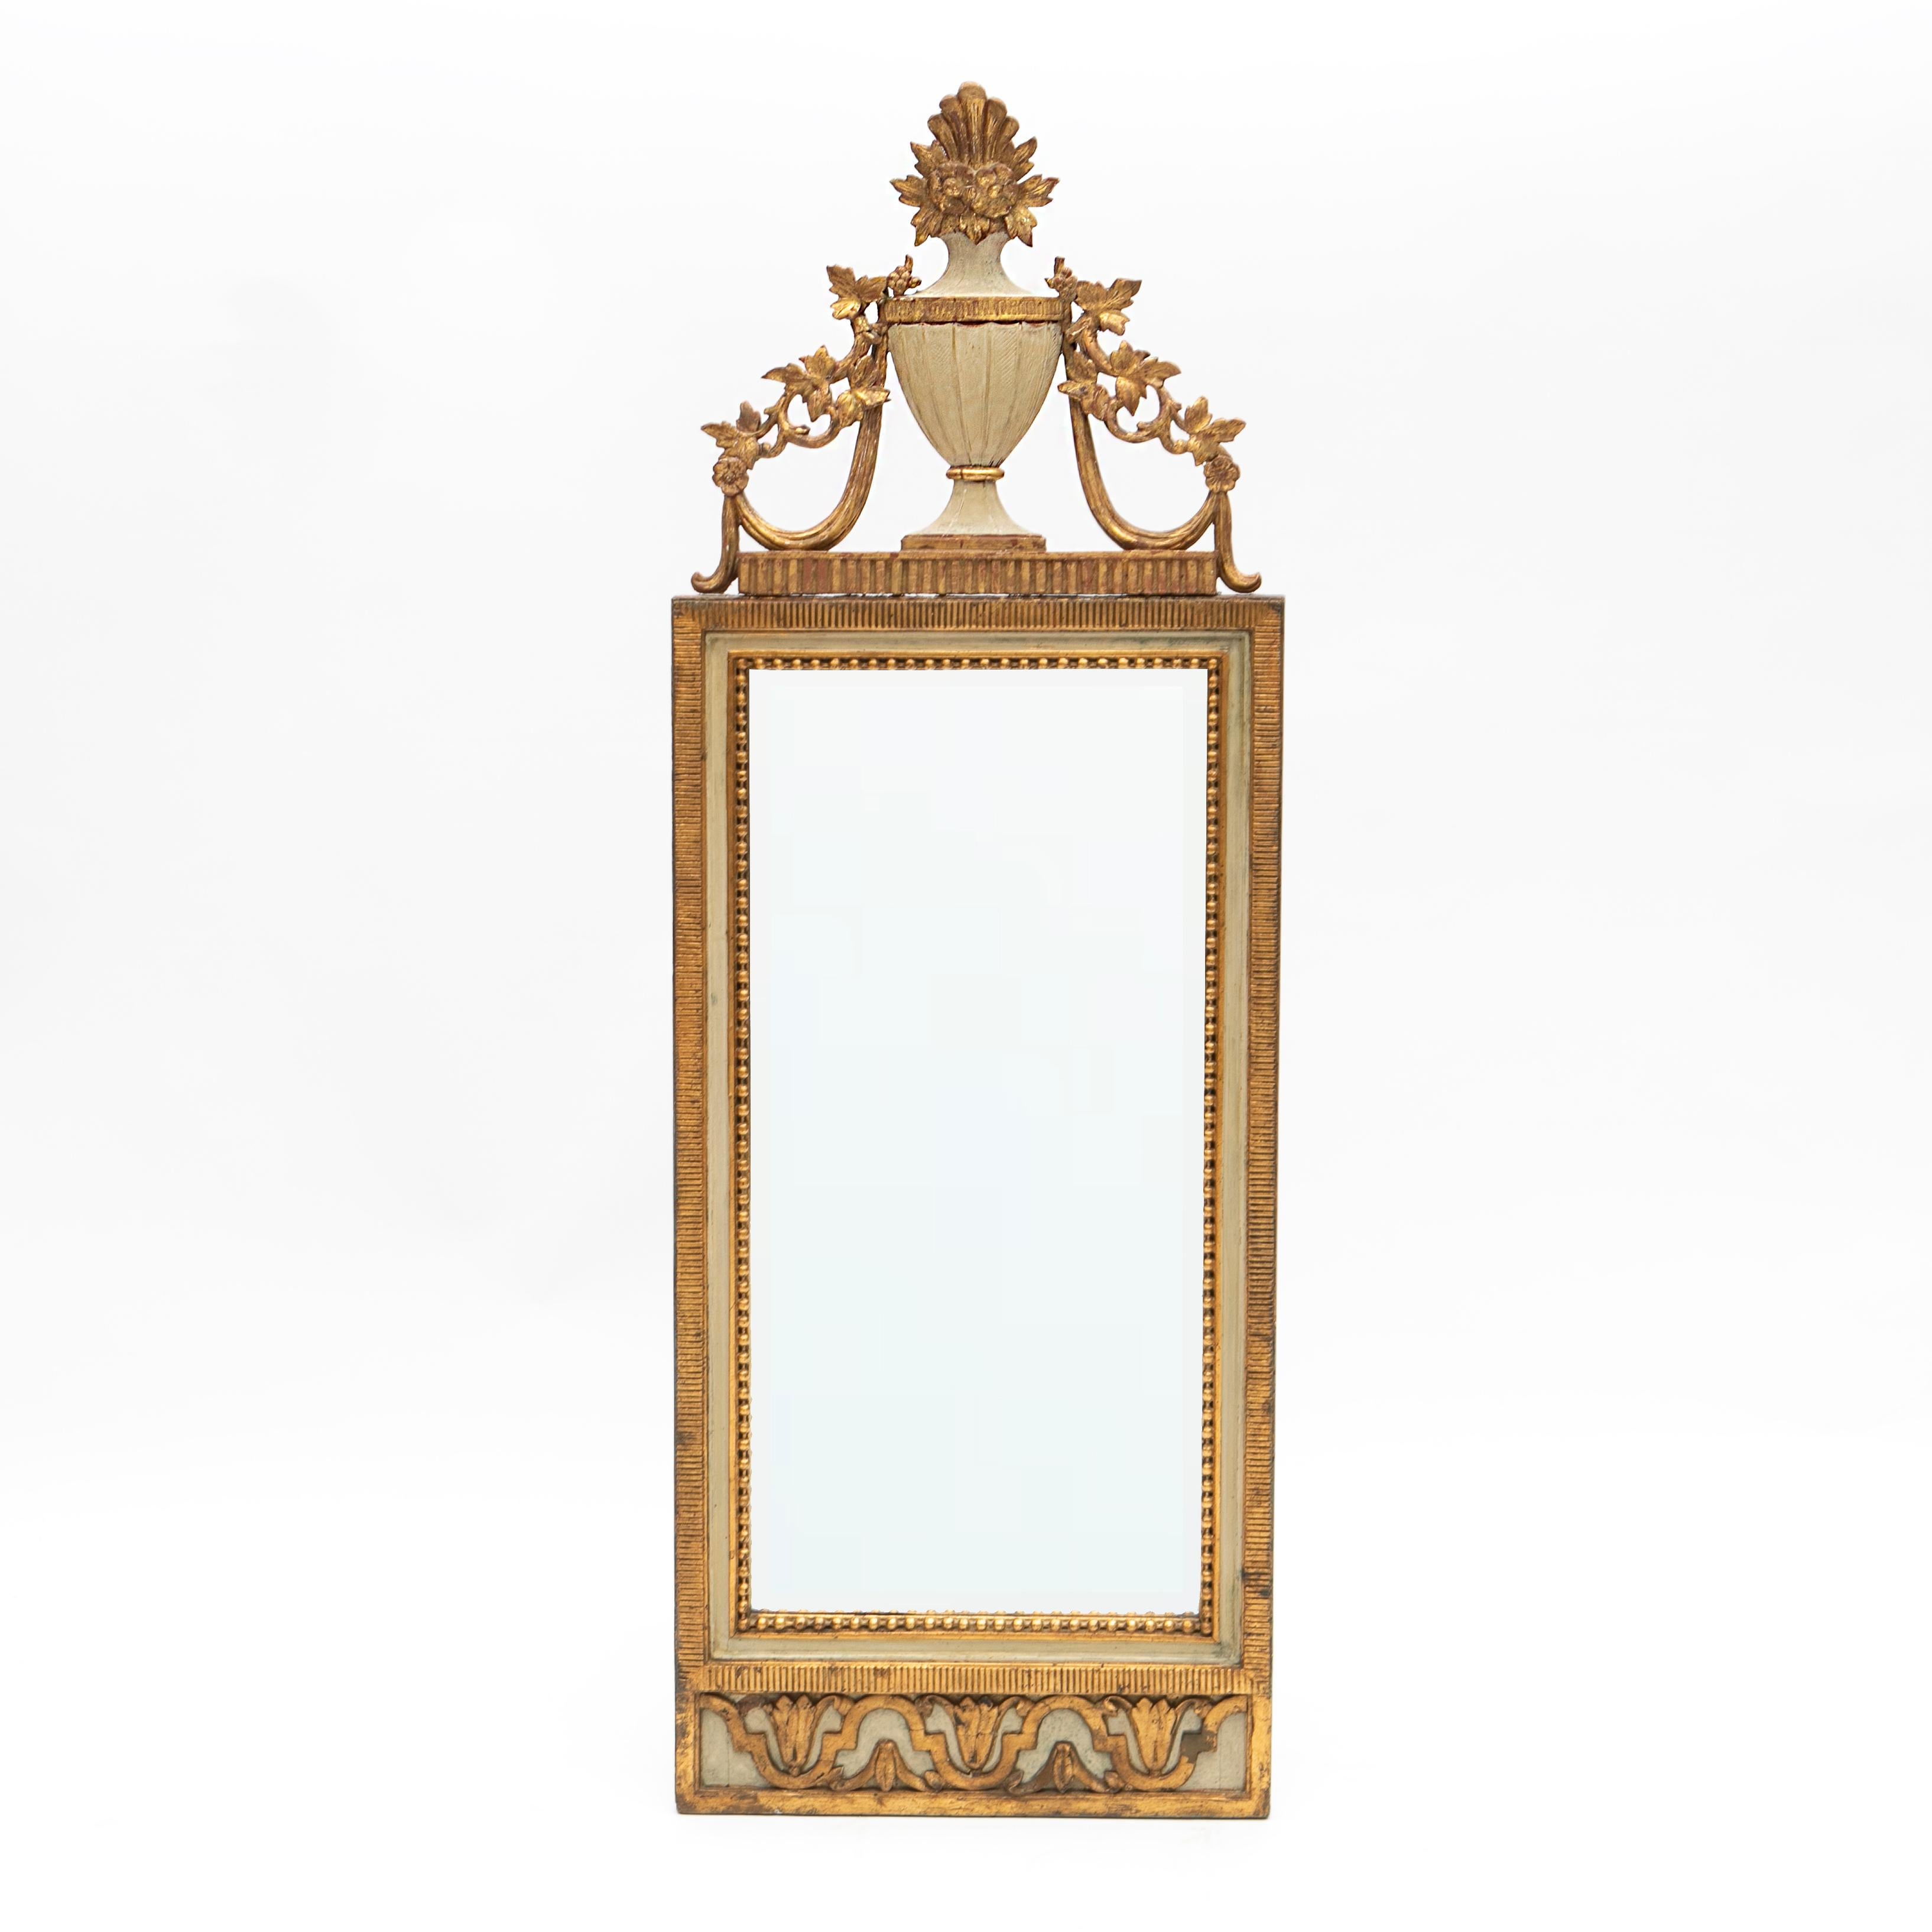 Miroir mural danois en bois doré sculpté d'époque Louis XVI, en état d'origine. 
Miroir biseauté dans un cadre sculpté gris clair et doré avec des cannelures entourées d'une bordure de perles sculptées. Au sommet, un vase sculpté et du